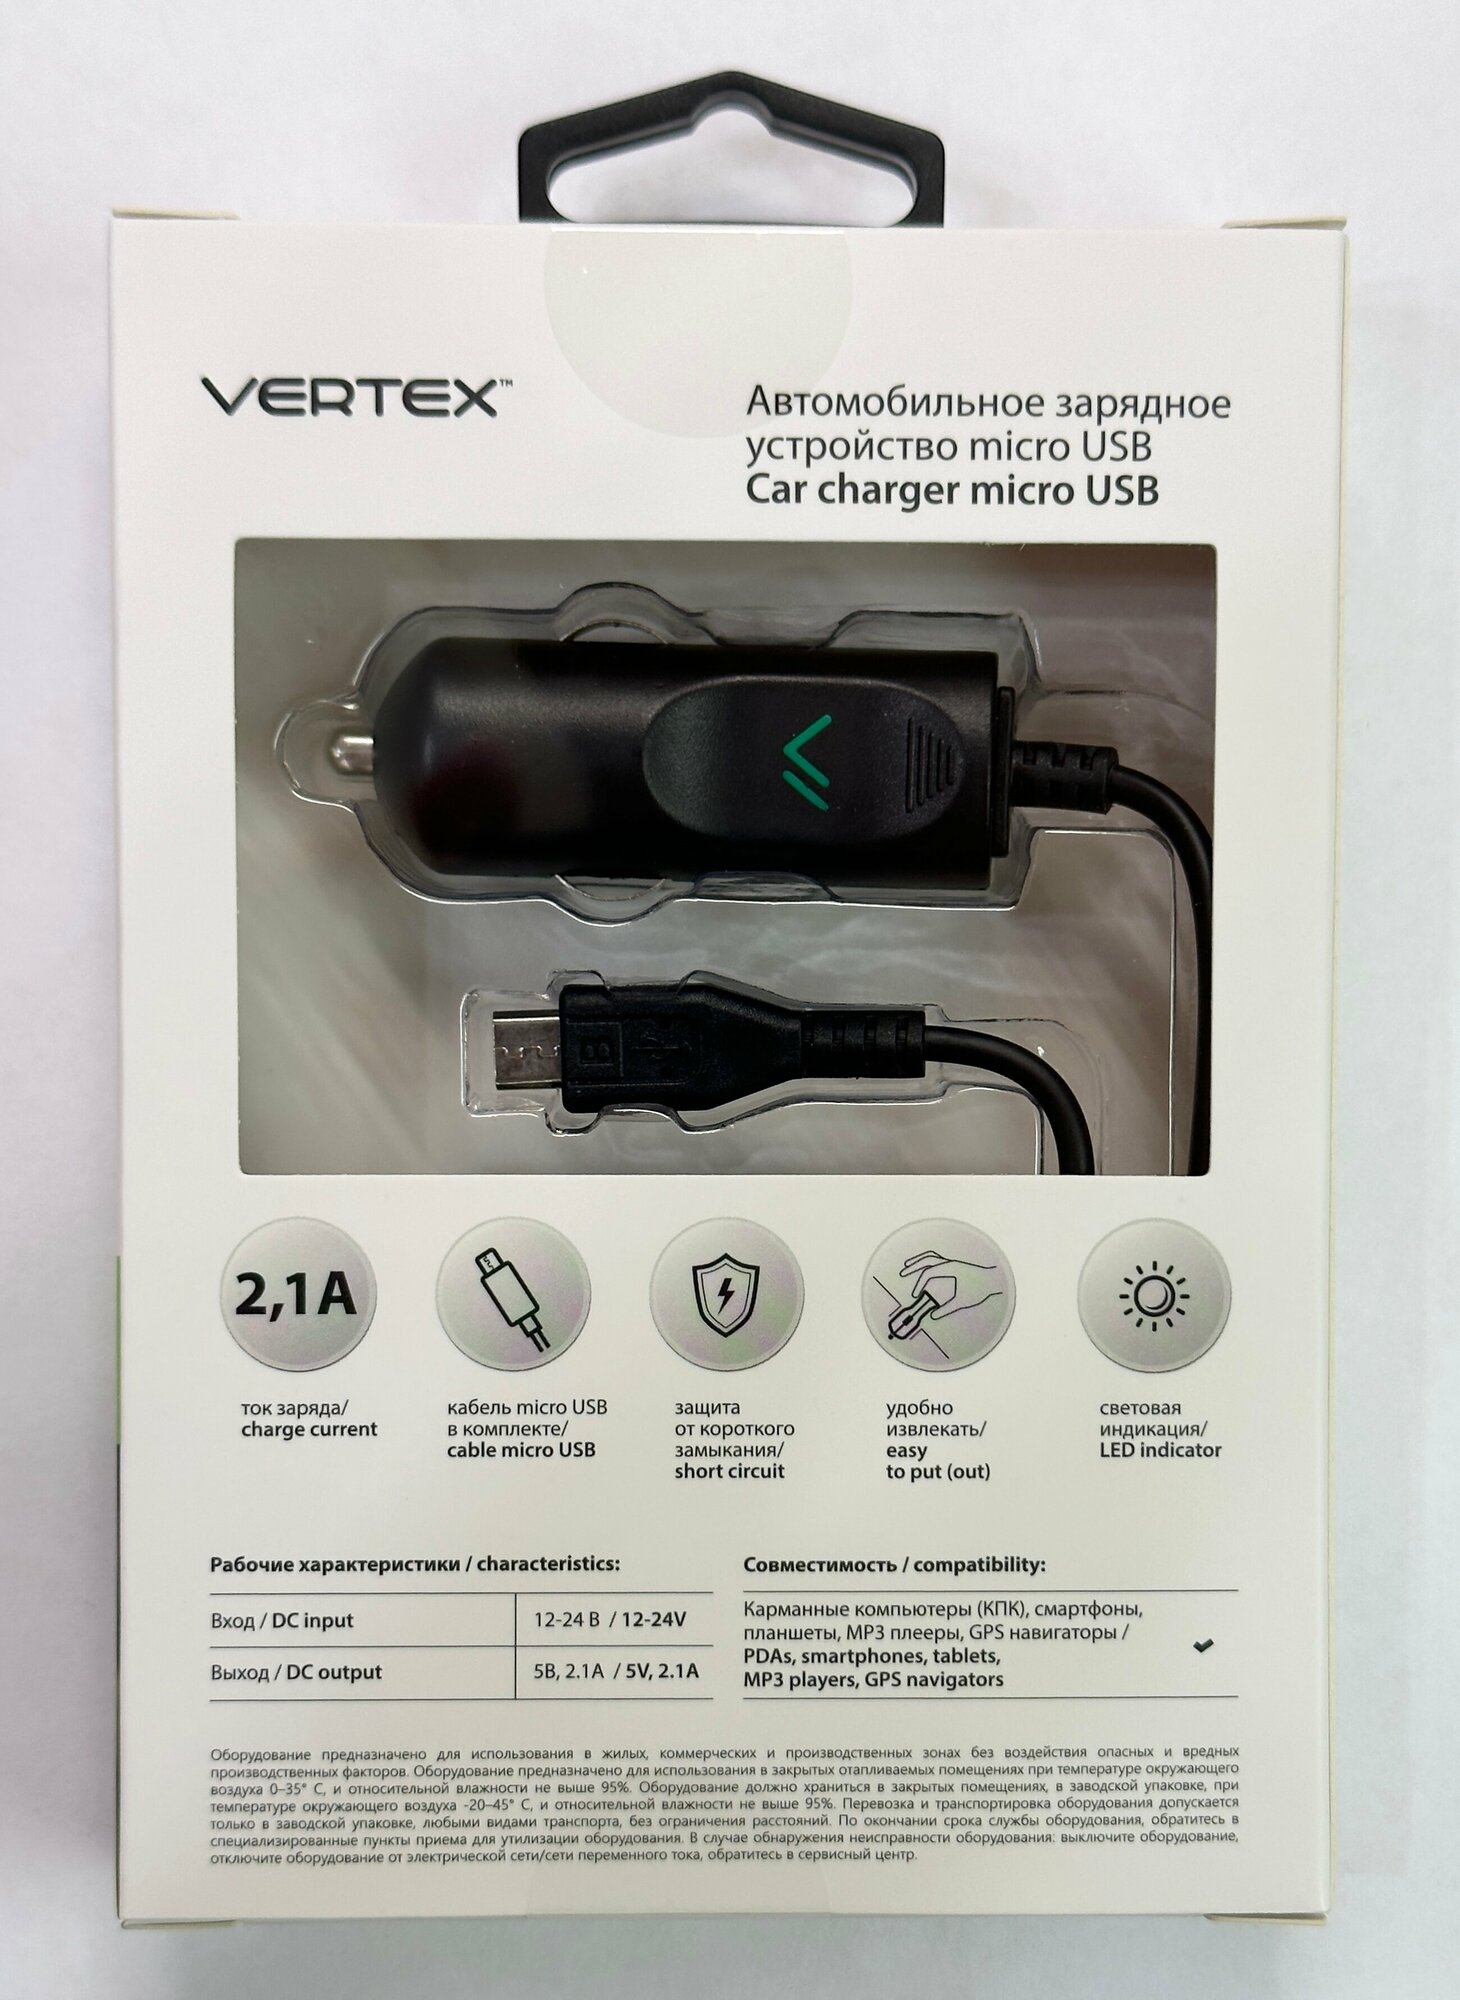 Автомобильное зарядное устройство Vertex - фото №3